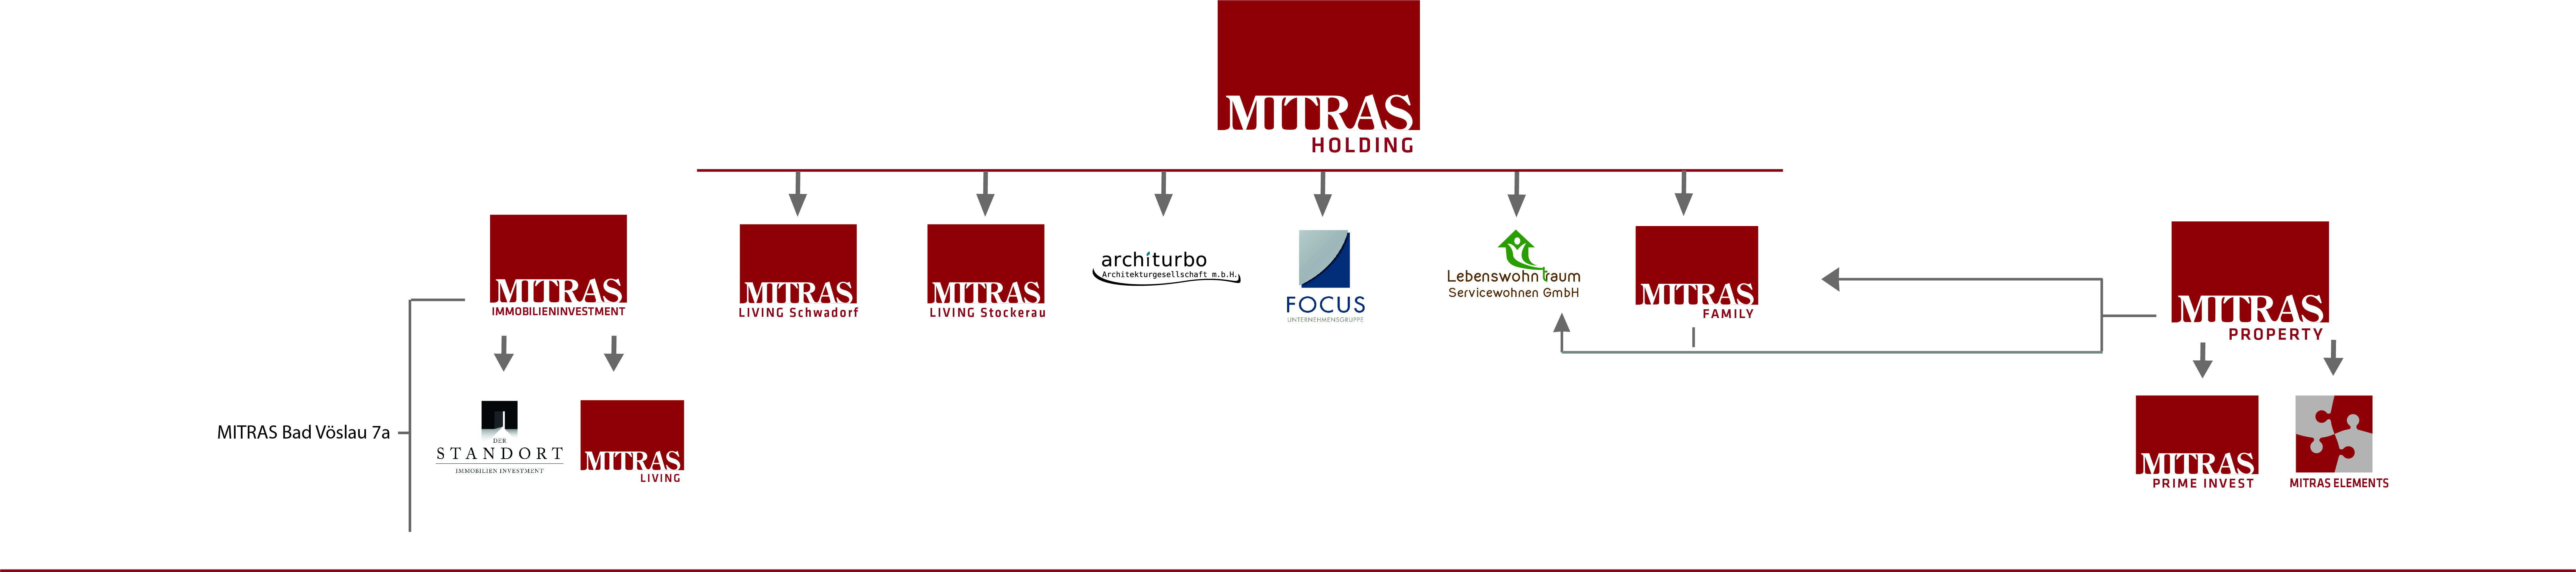 Organigramm der MITRAS Holding